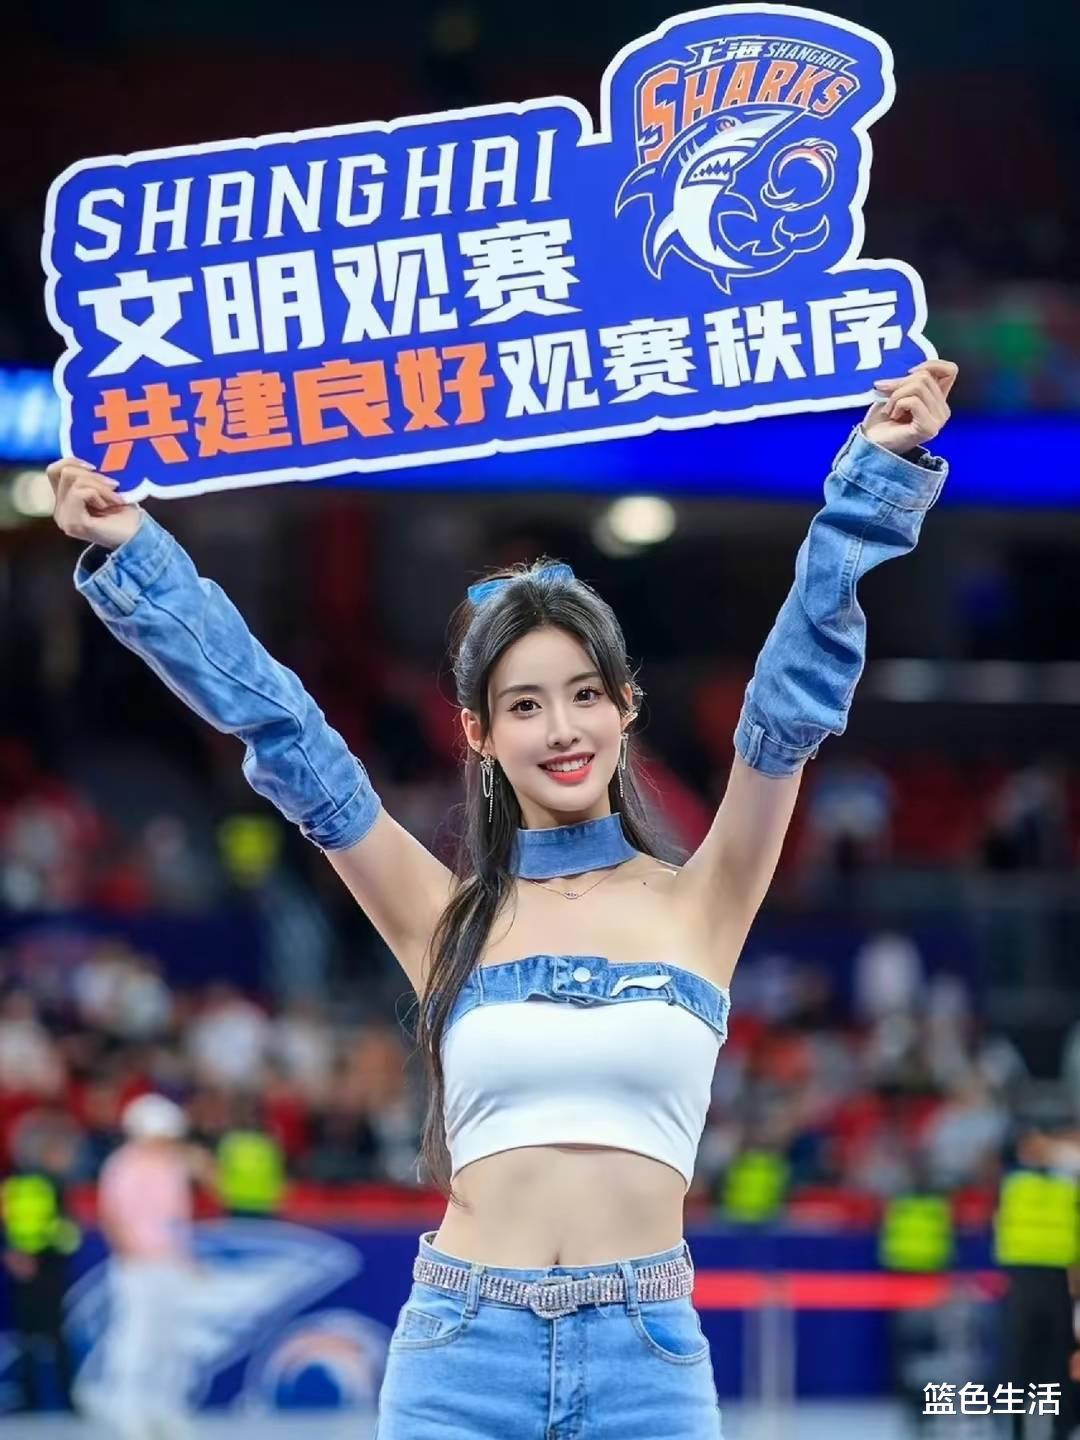 试问上海男篮派出这支啦啦队迎战，阁下该如何应付？